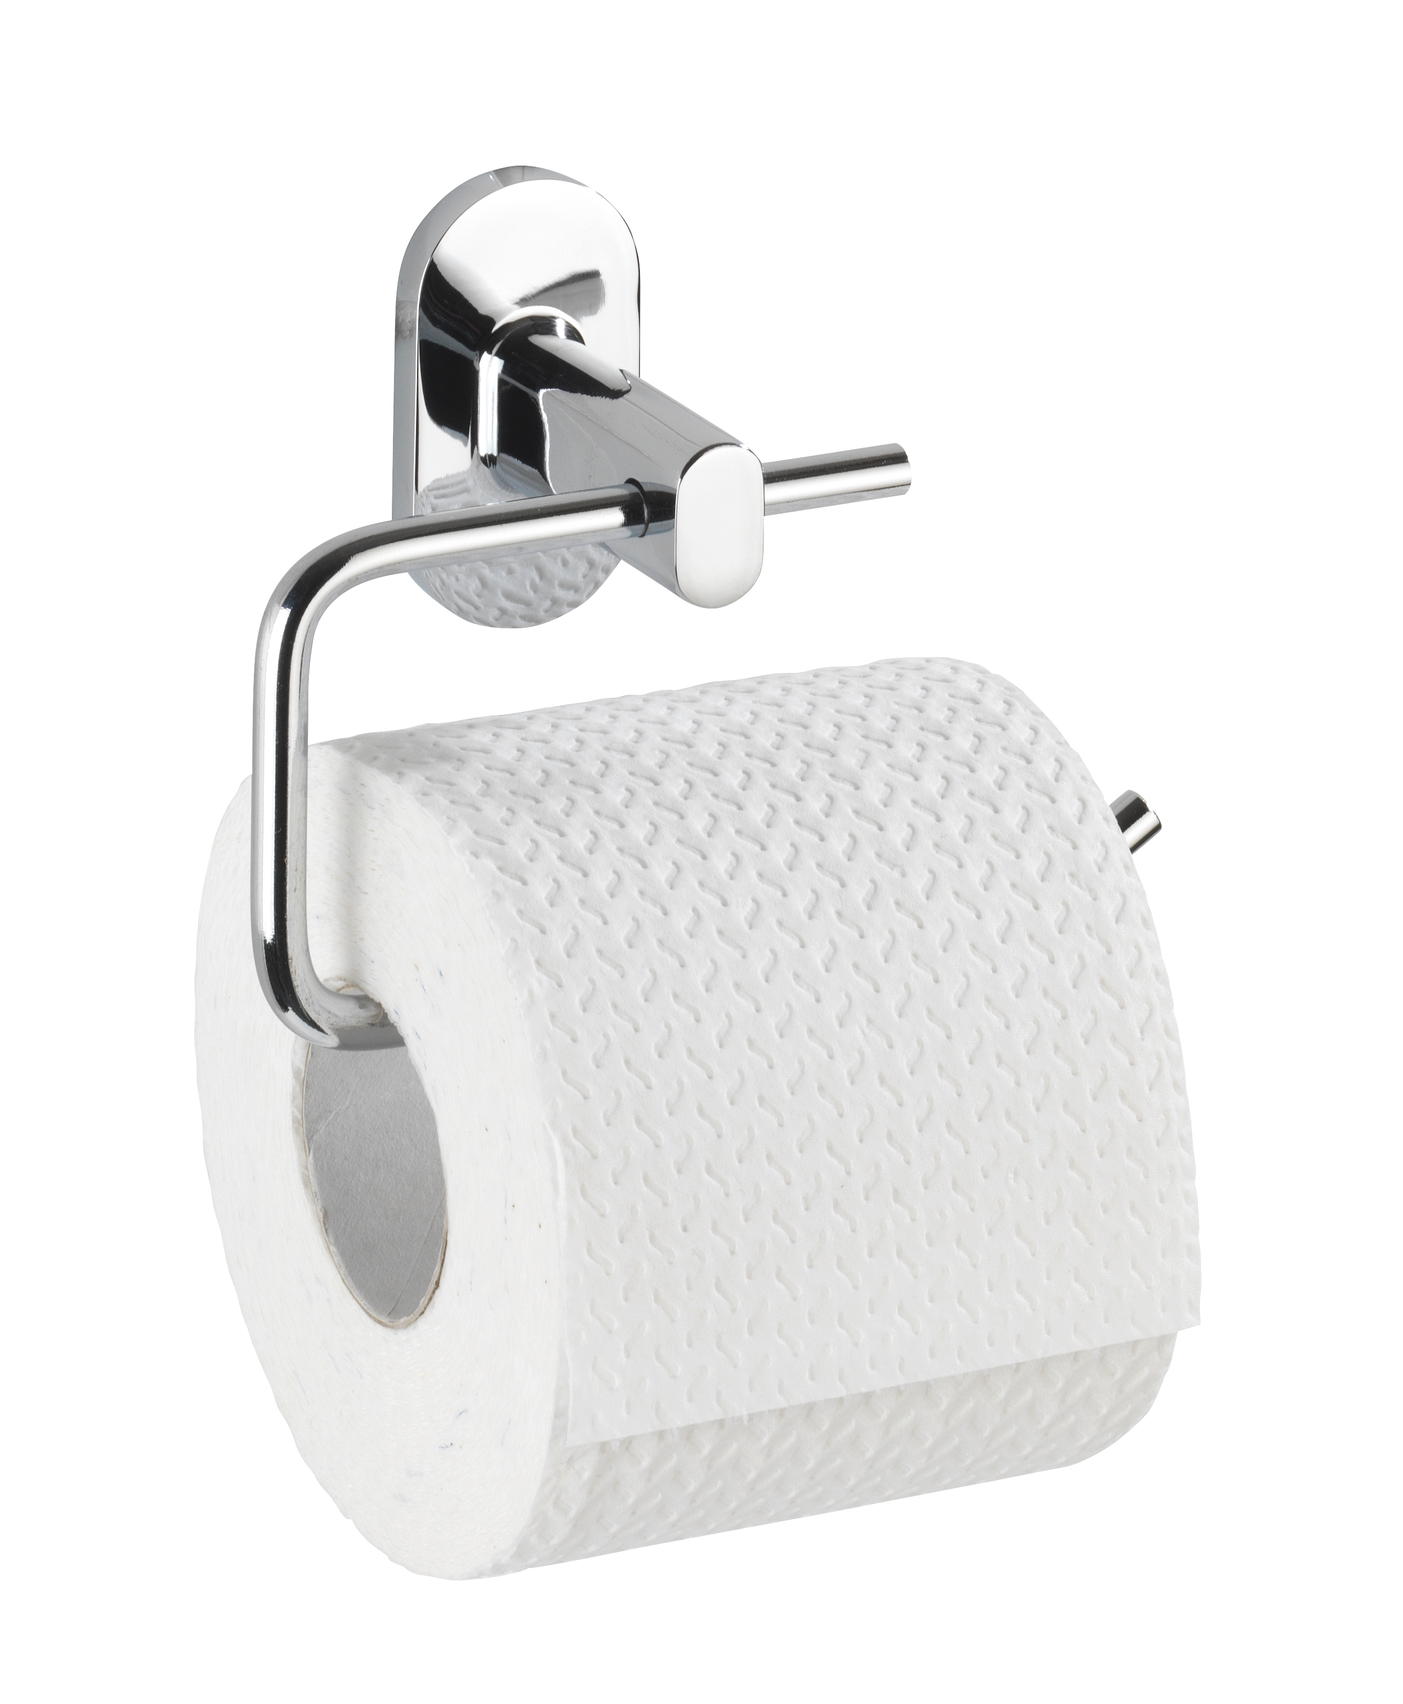 Wenko Power-Loc® Toilettenpapierhalter Puerto Rico 13,5 x 10,5 x 6,5 cm, ohne Deckel, silber glänzend. Befestigen ohne bohren